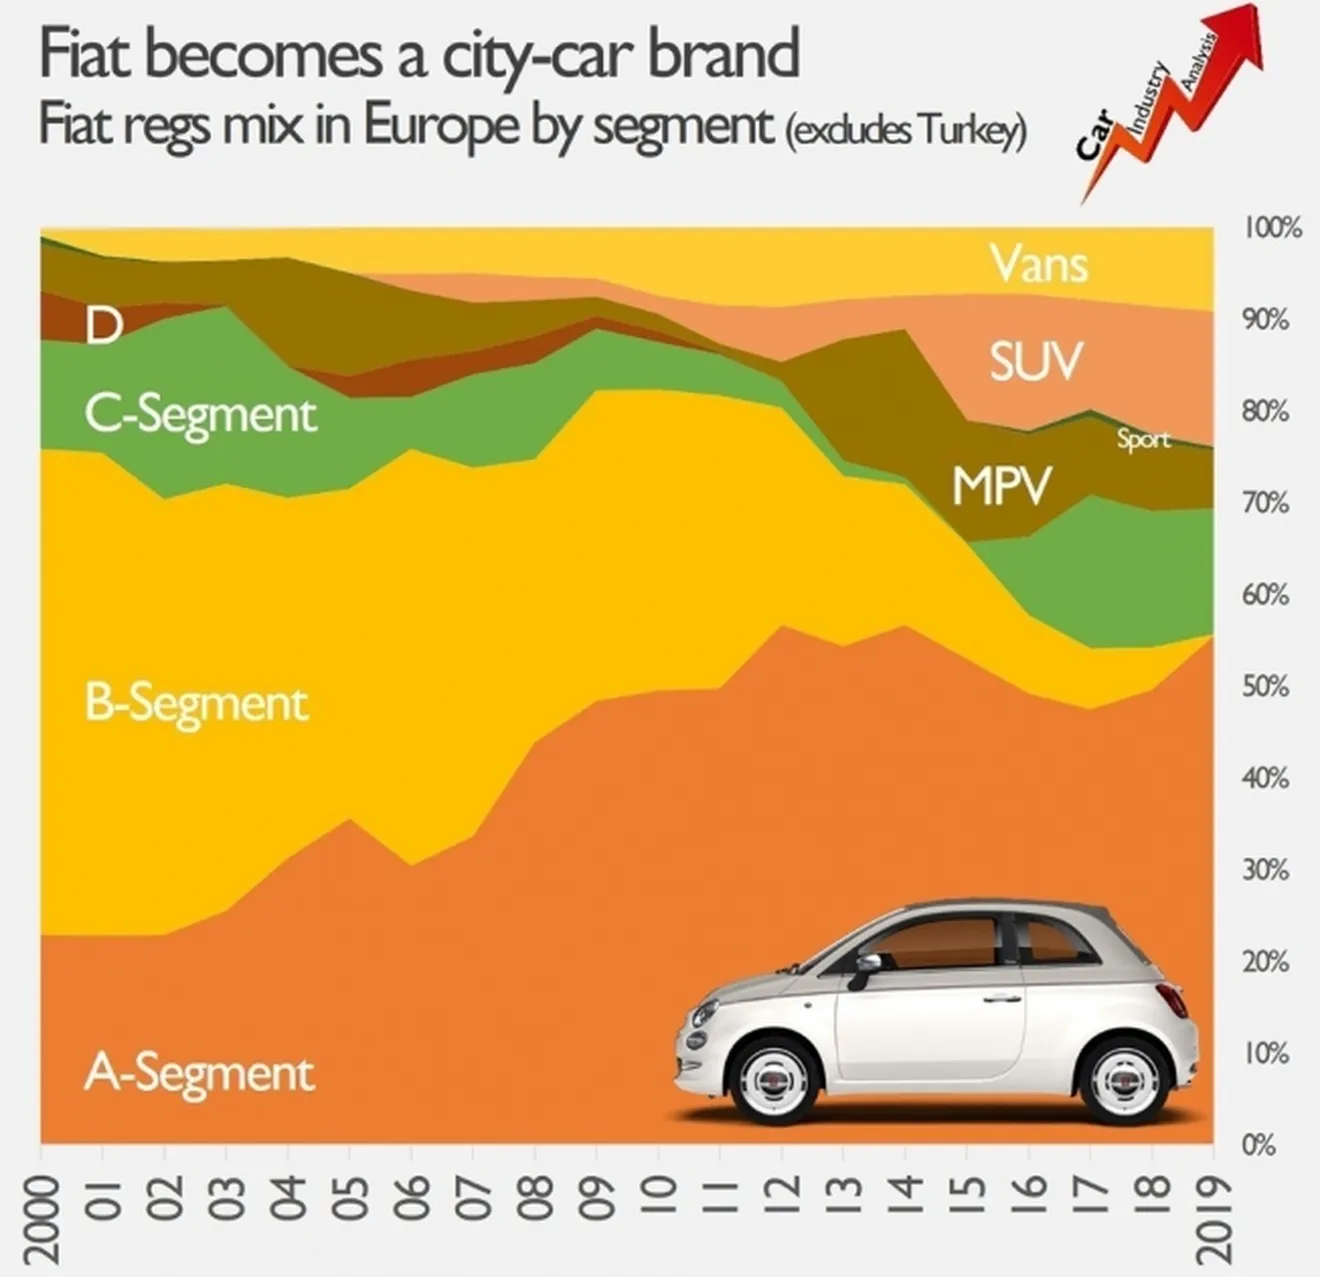 Fiat es una marca de coches urbanos